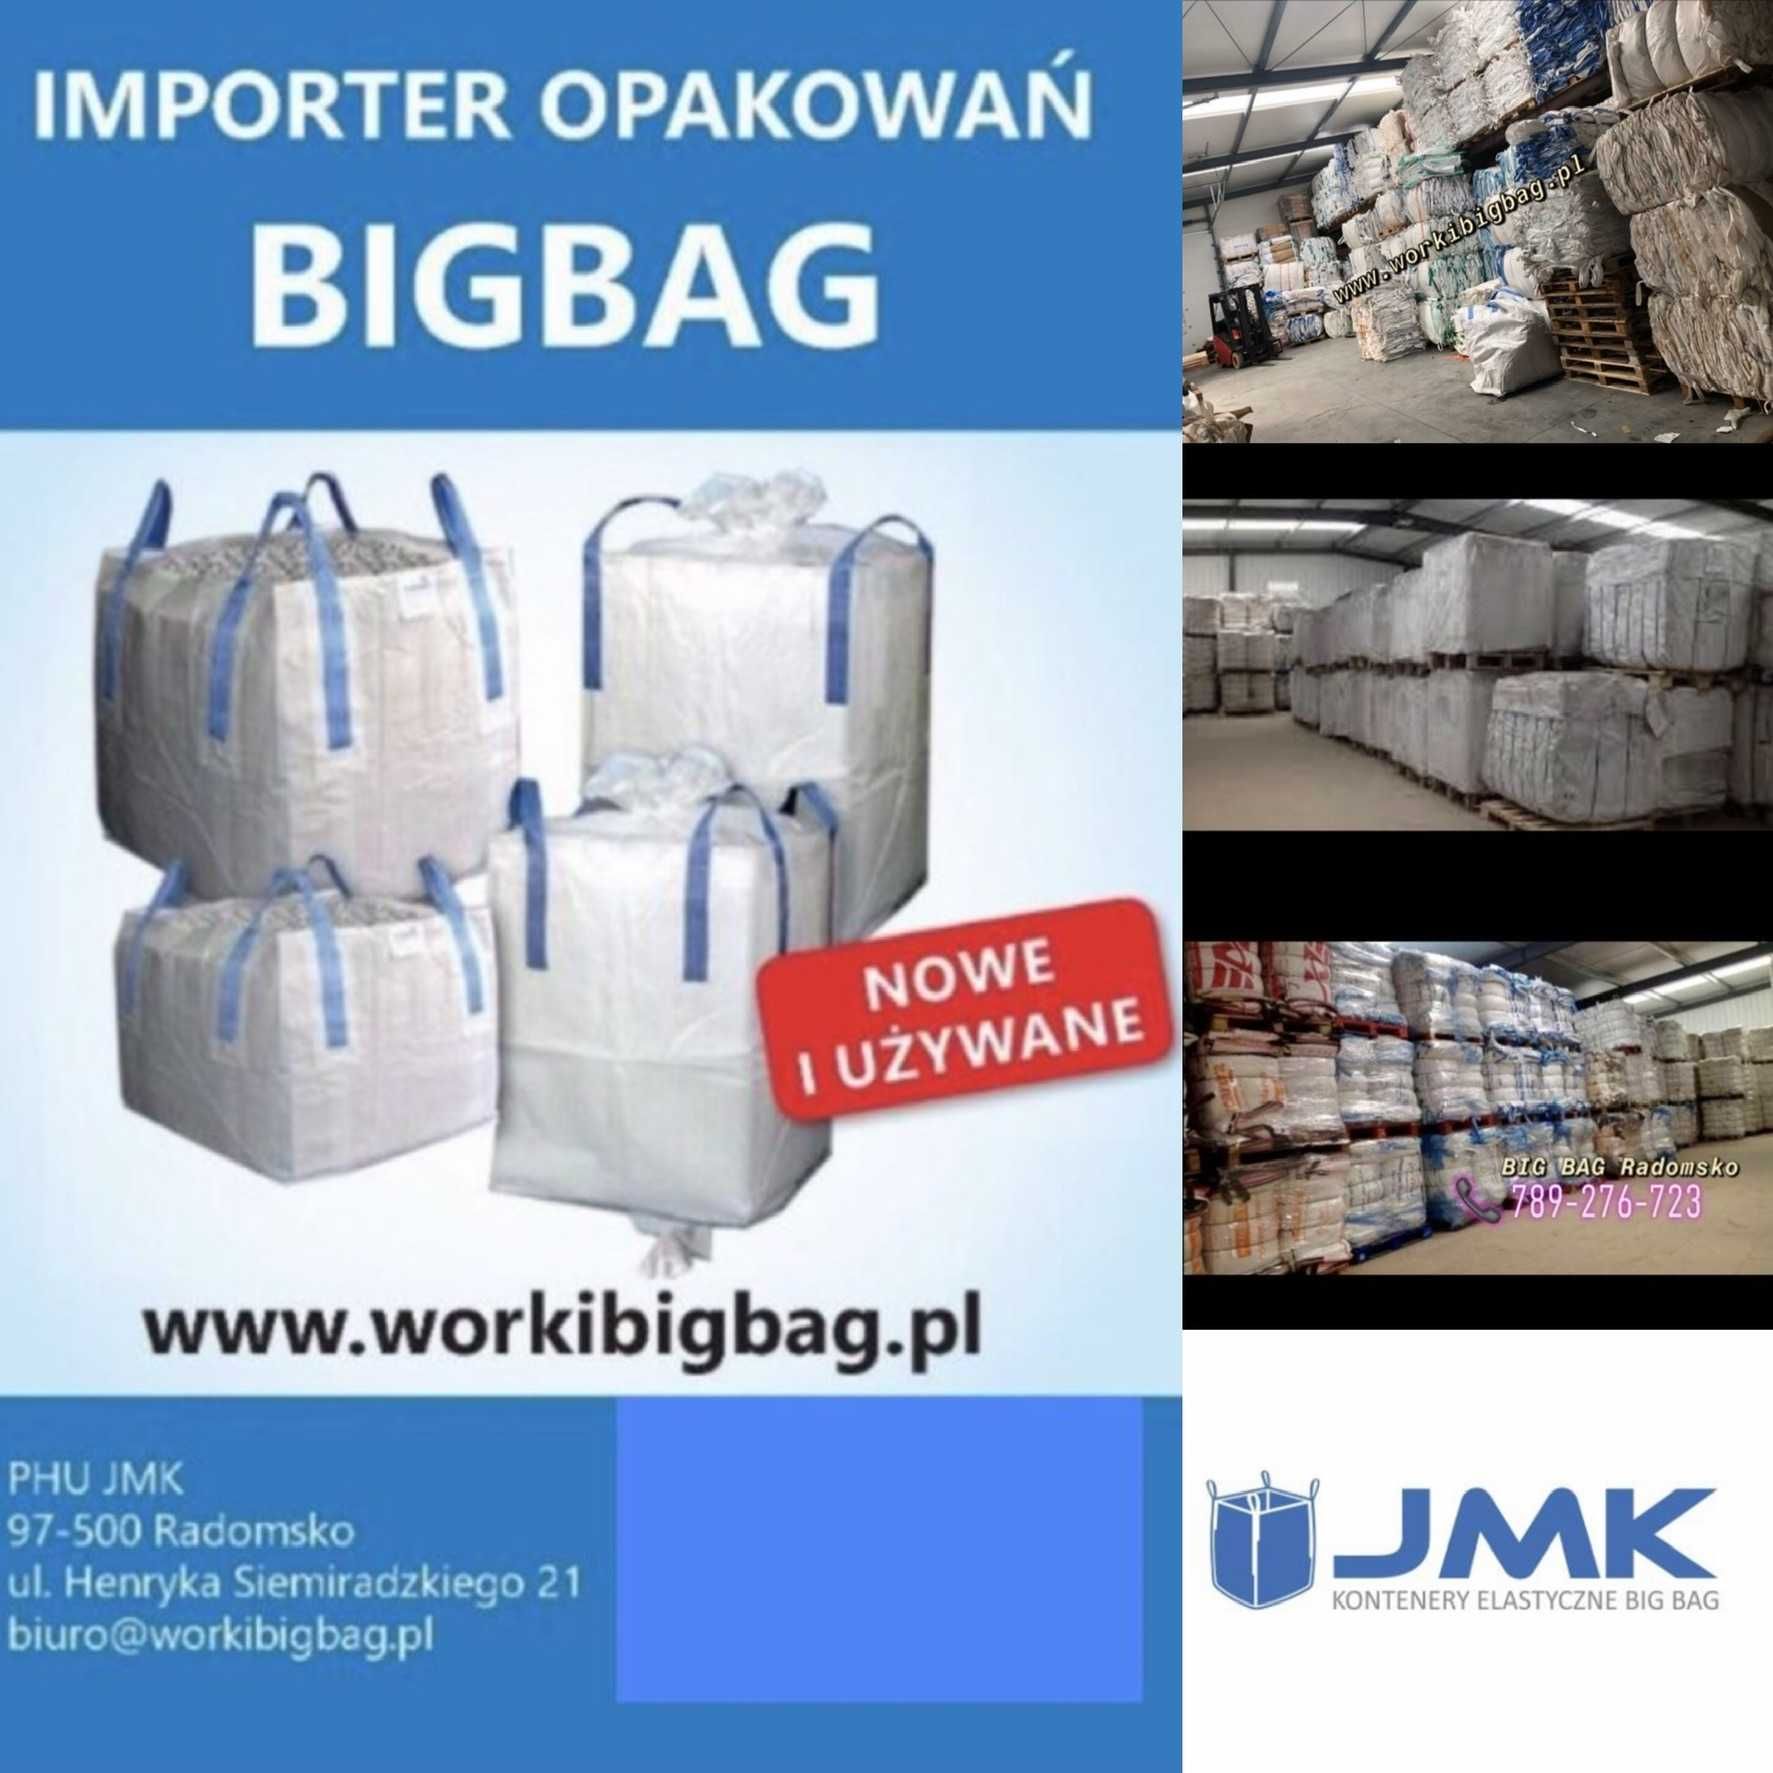 WORKI big bag 90X92X150 cm NOWE big bag bagi Największy wybór w Polsce